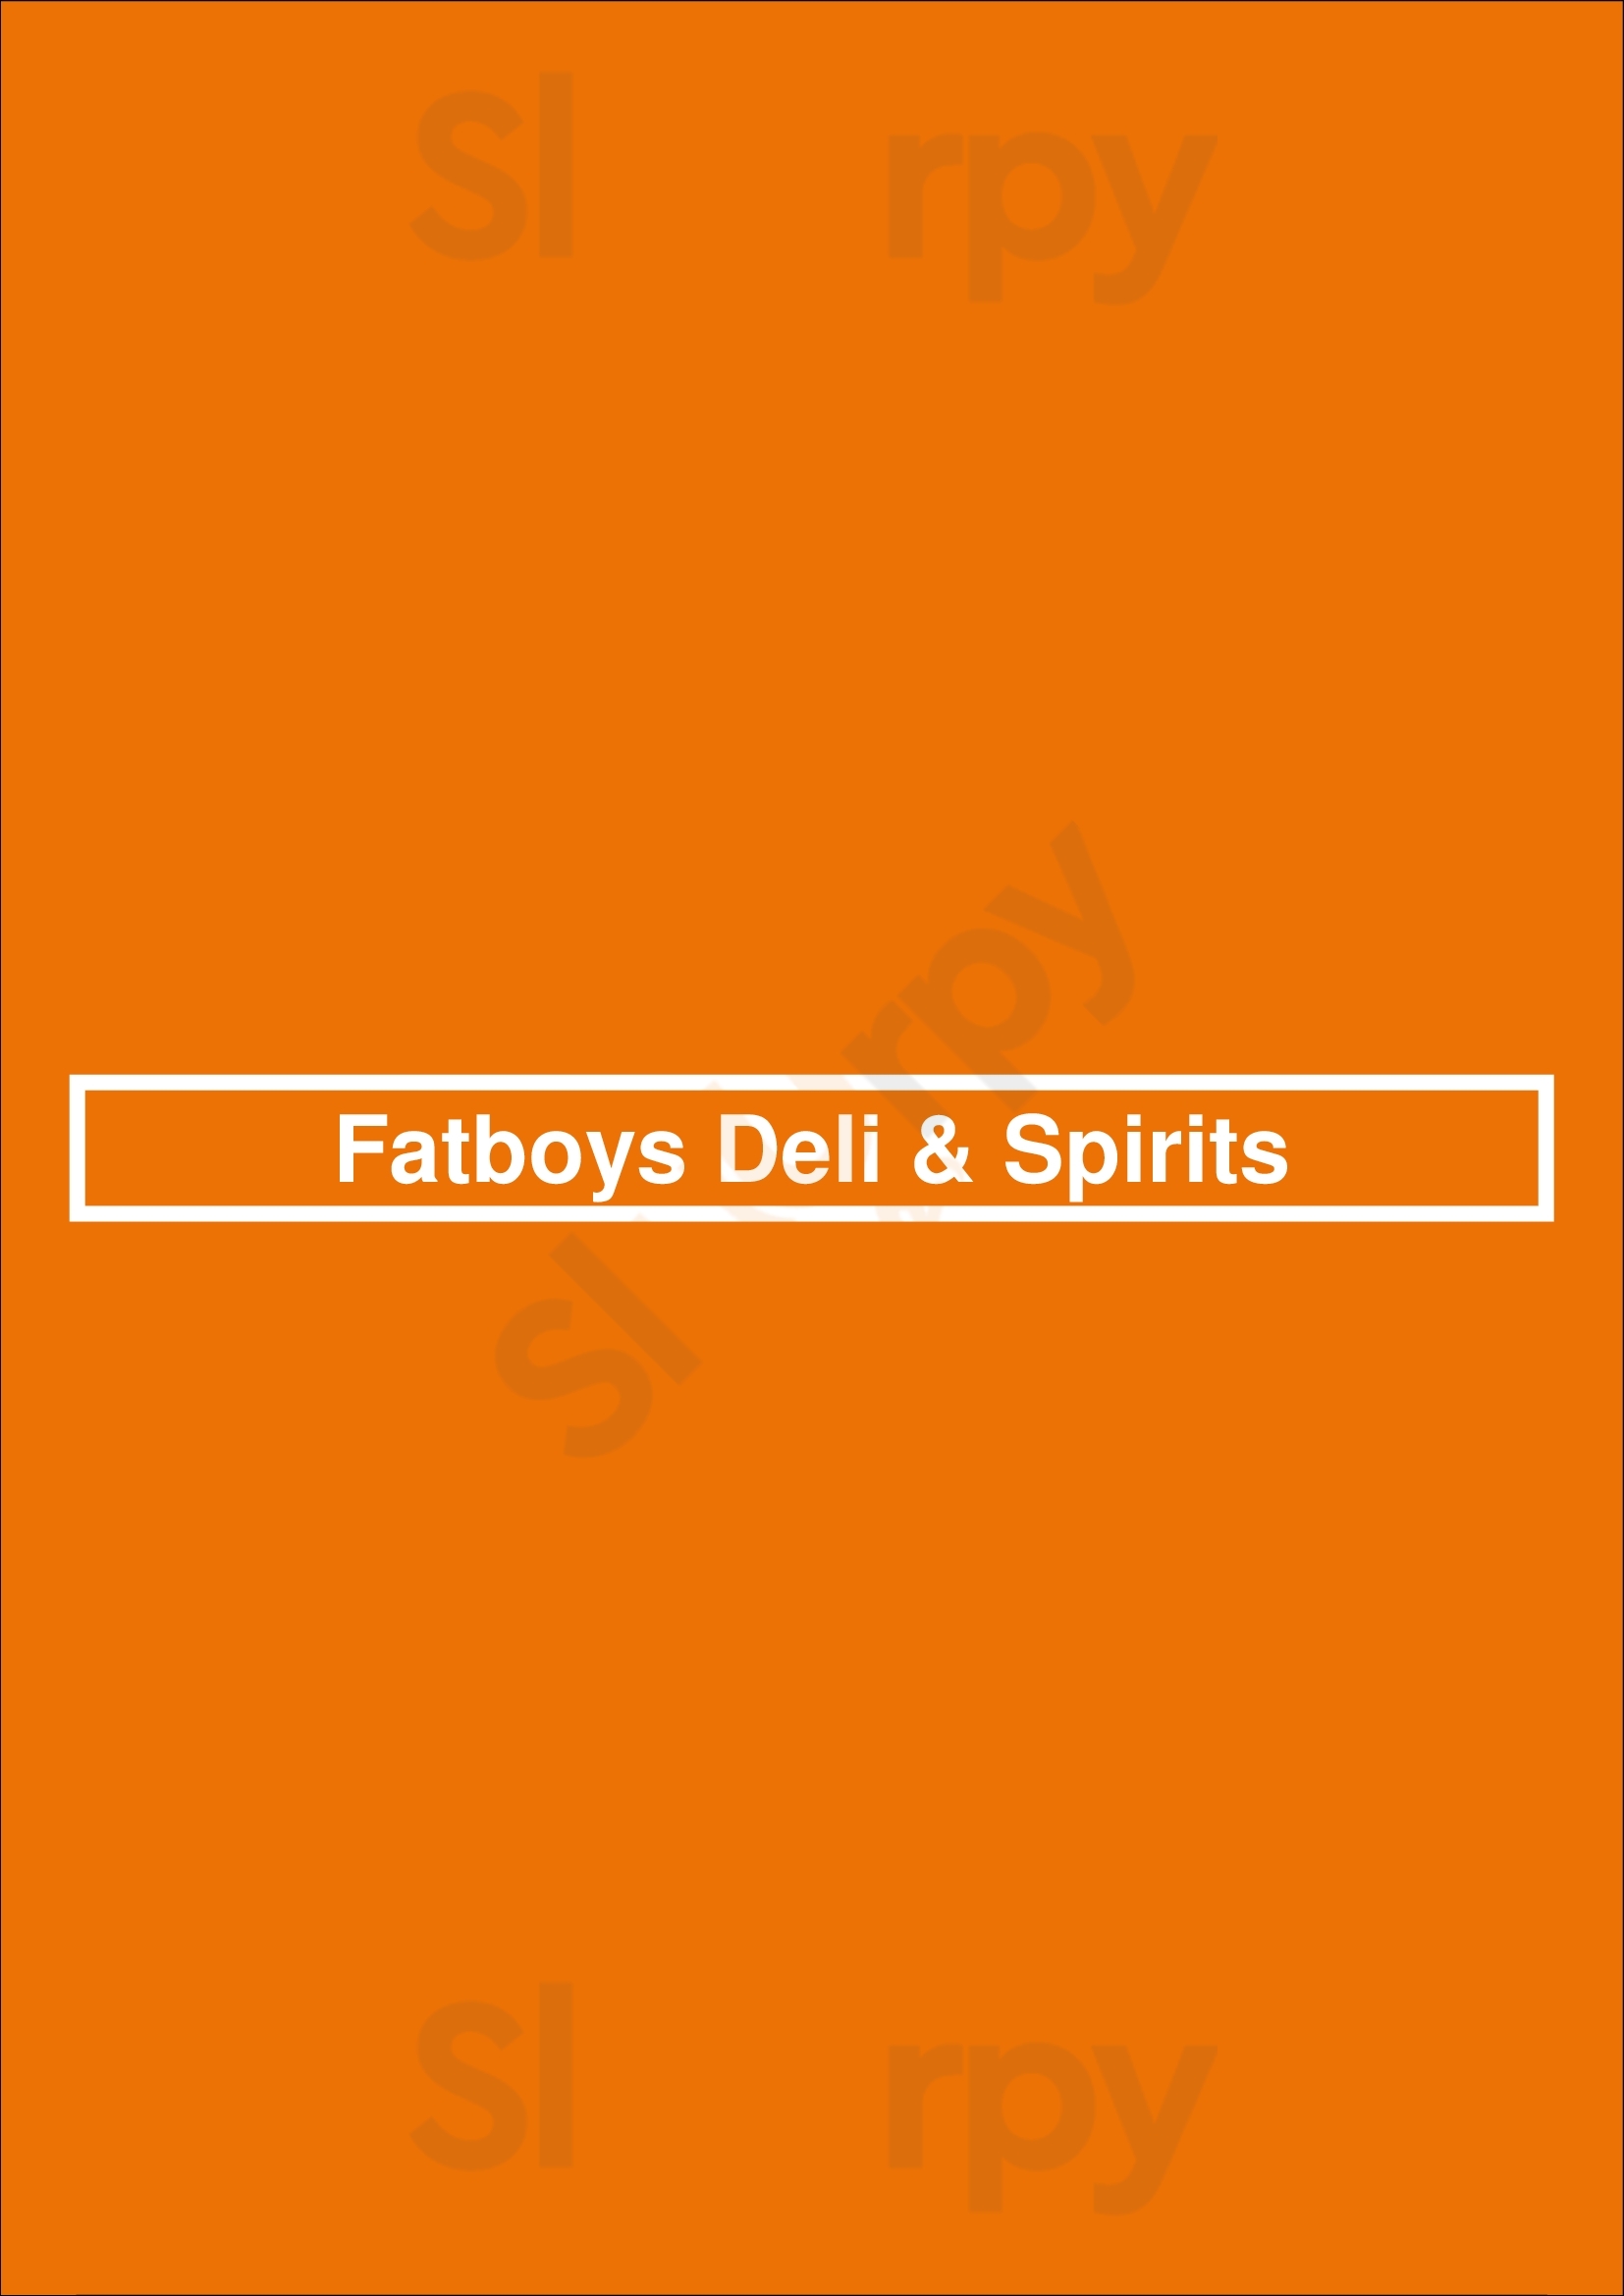 Fatboy's Deli & Spirits San Diego Menu - 1